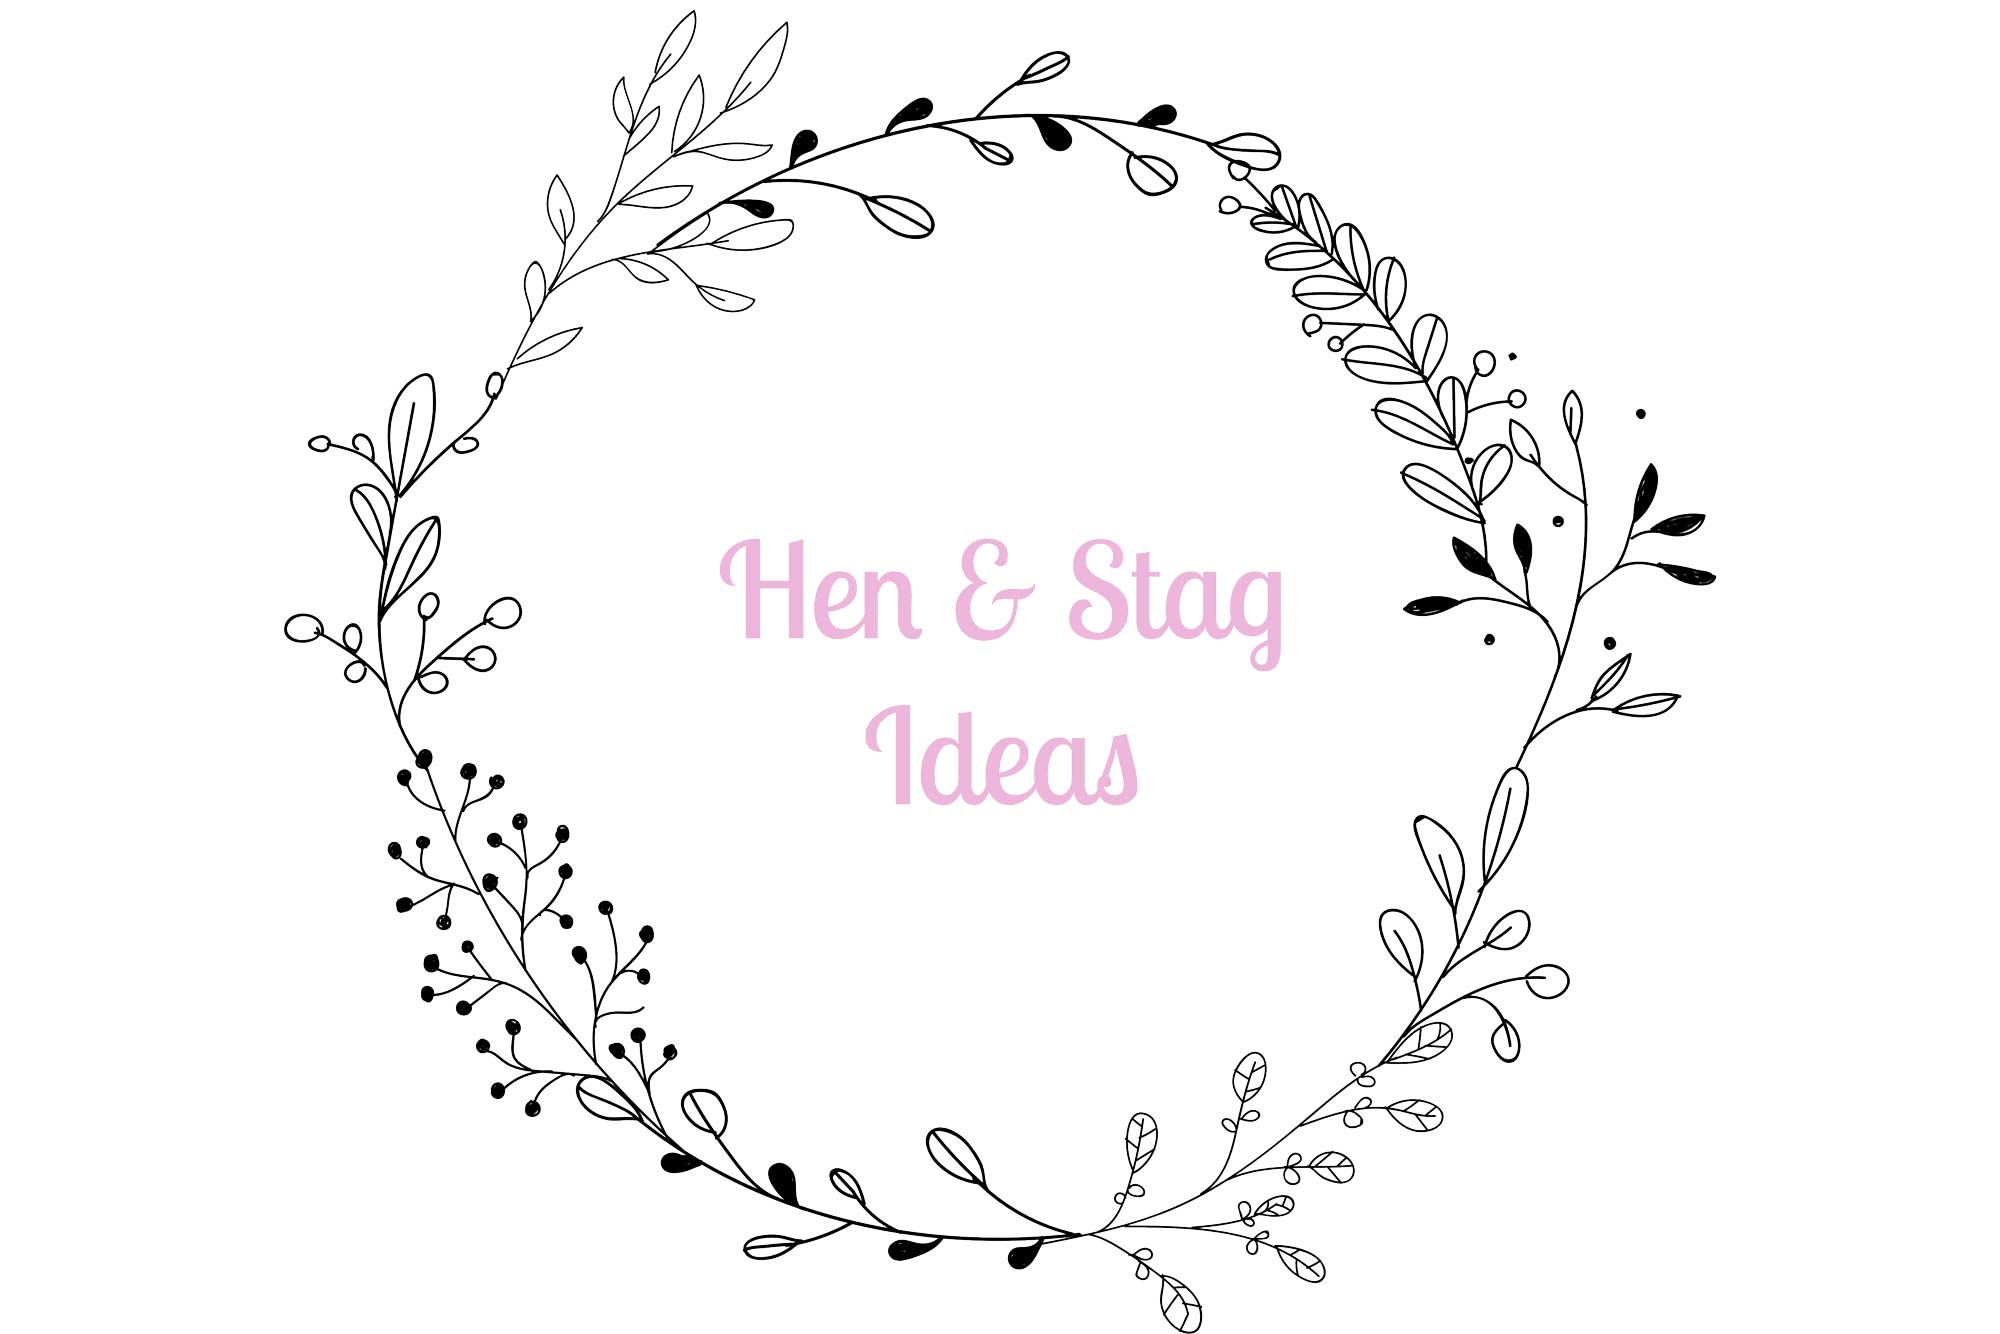 Hen & Stag Ideas